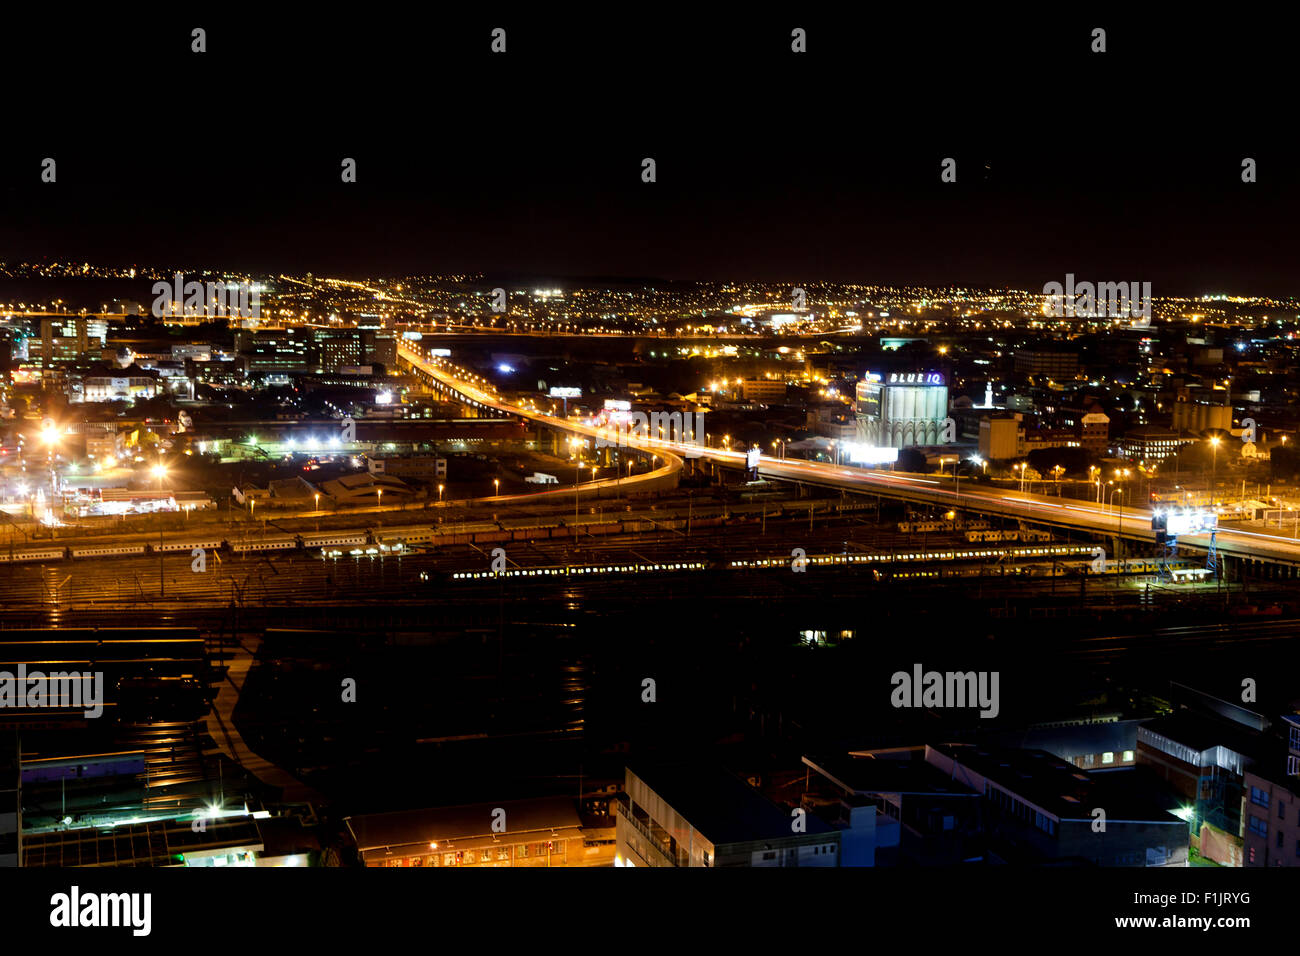 Photo de nuit d'une scène de ville Banque D'Images